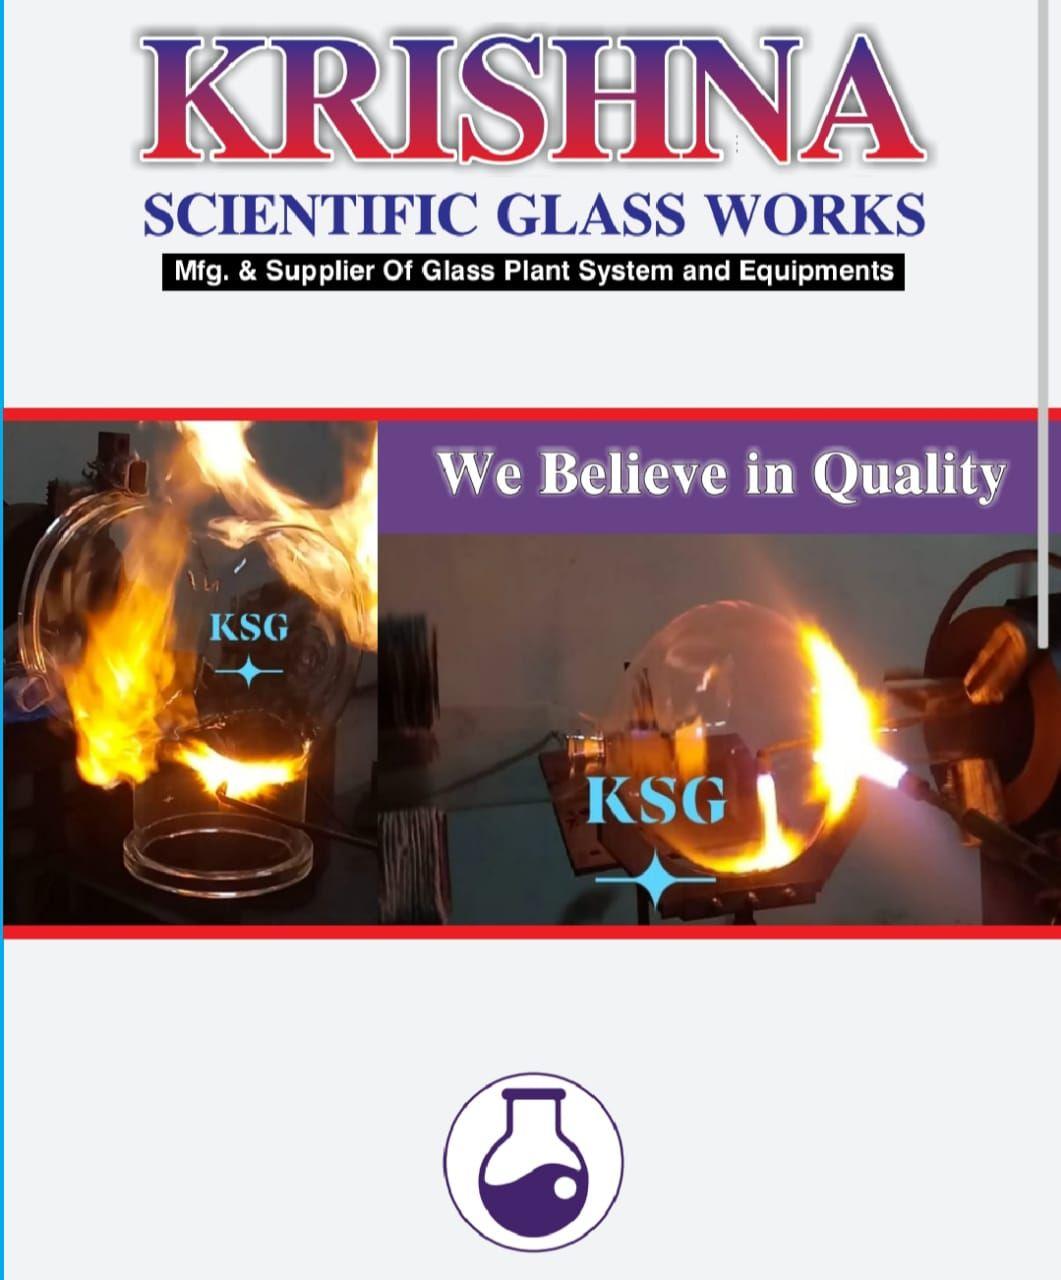 KRISHNA SCIENTIFIC GLASS WORKS